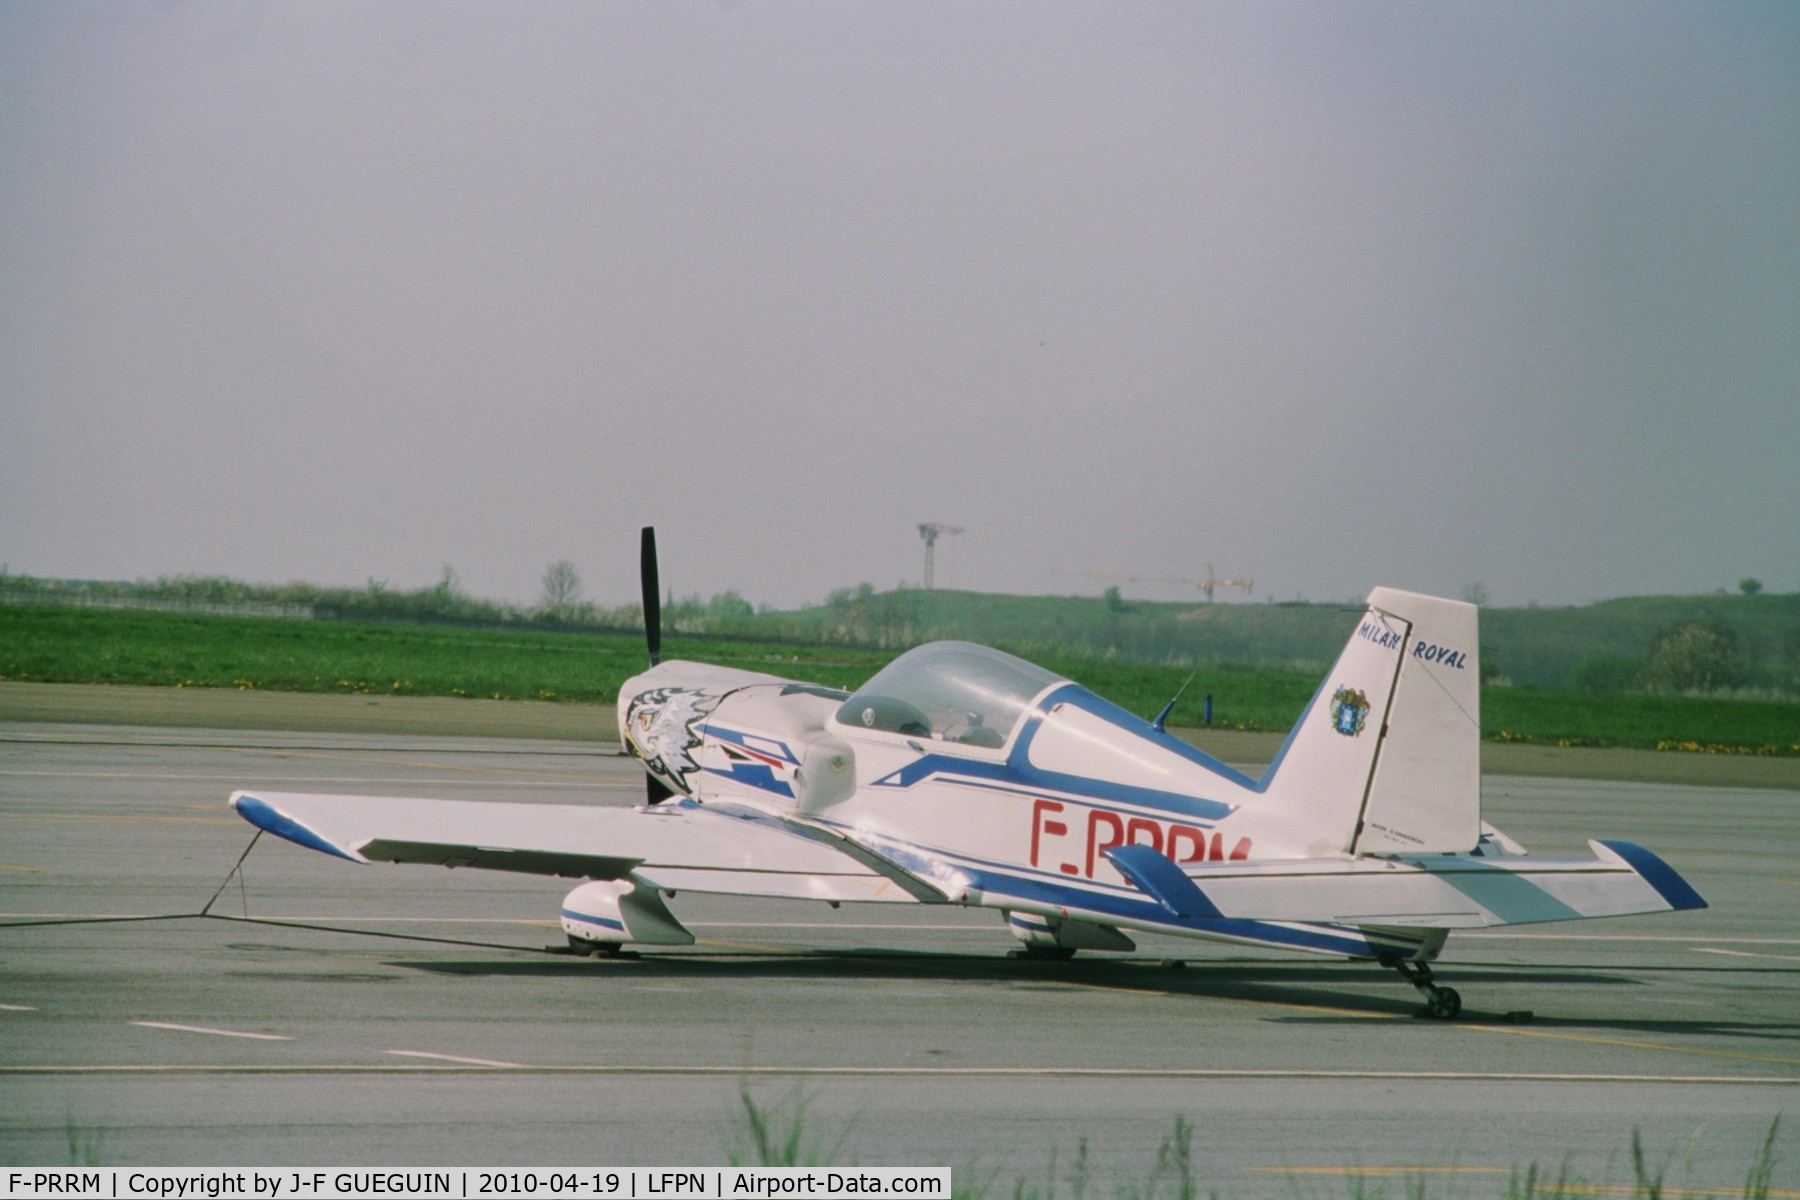 F-PRRM, Gravereau GD 2001 C/N 01, Parked at Paris/Toussus-le-Noble airport.